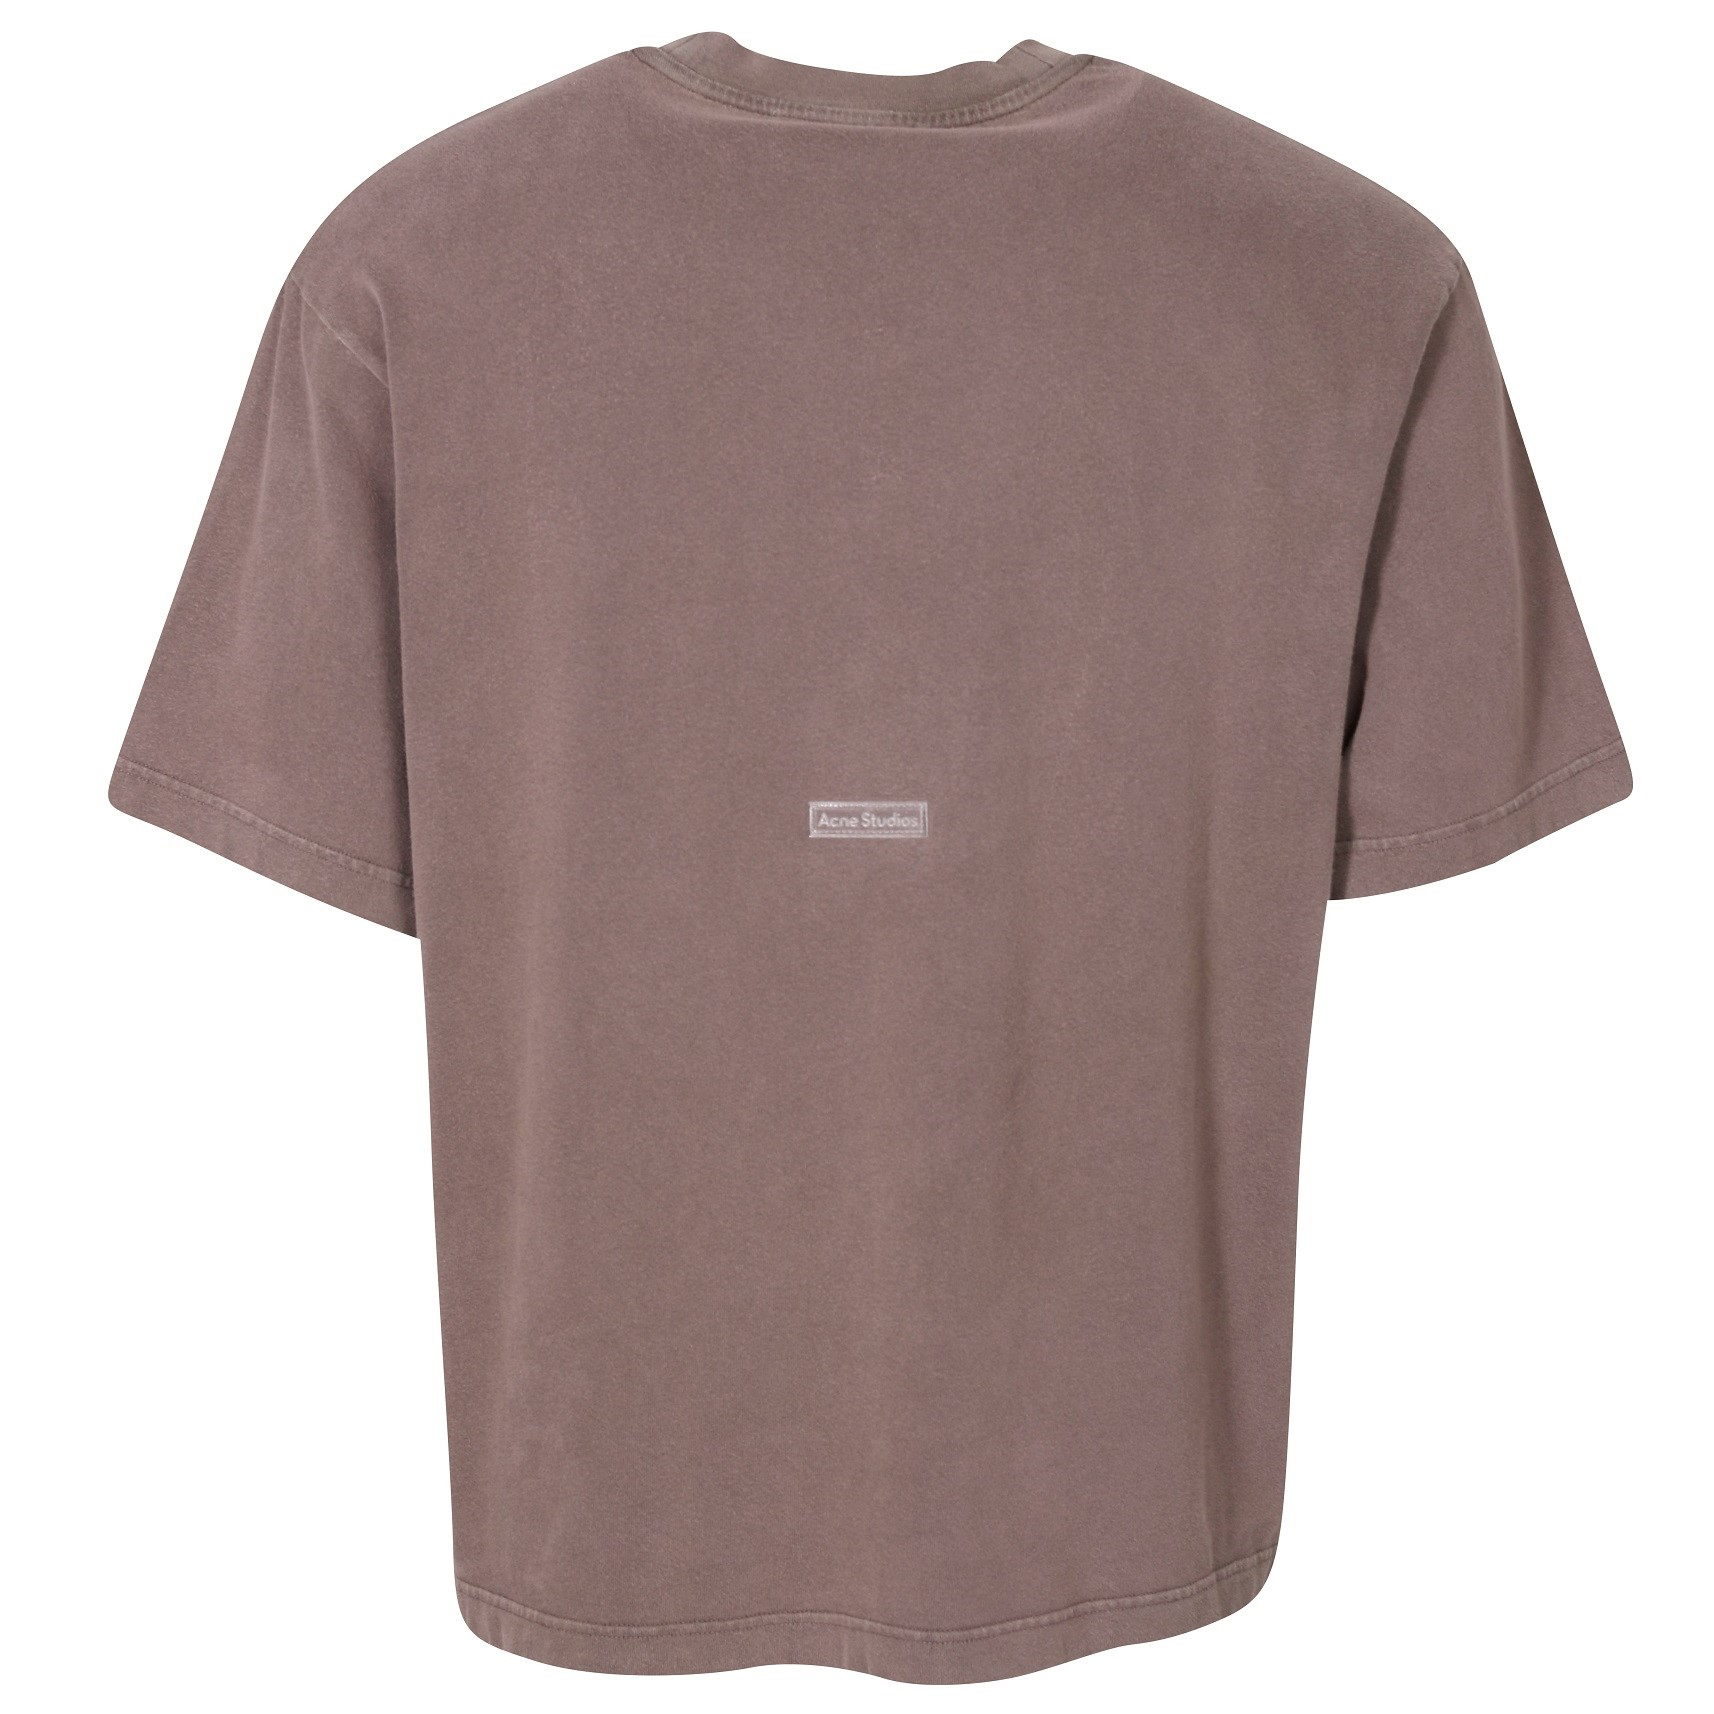 ACNE STUDIOS Vintage T-Shirt in Dark Brown